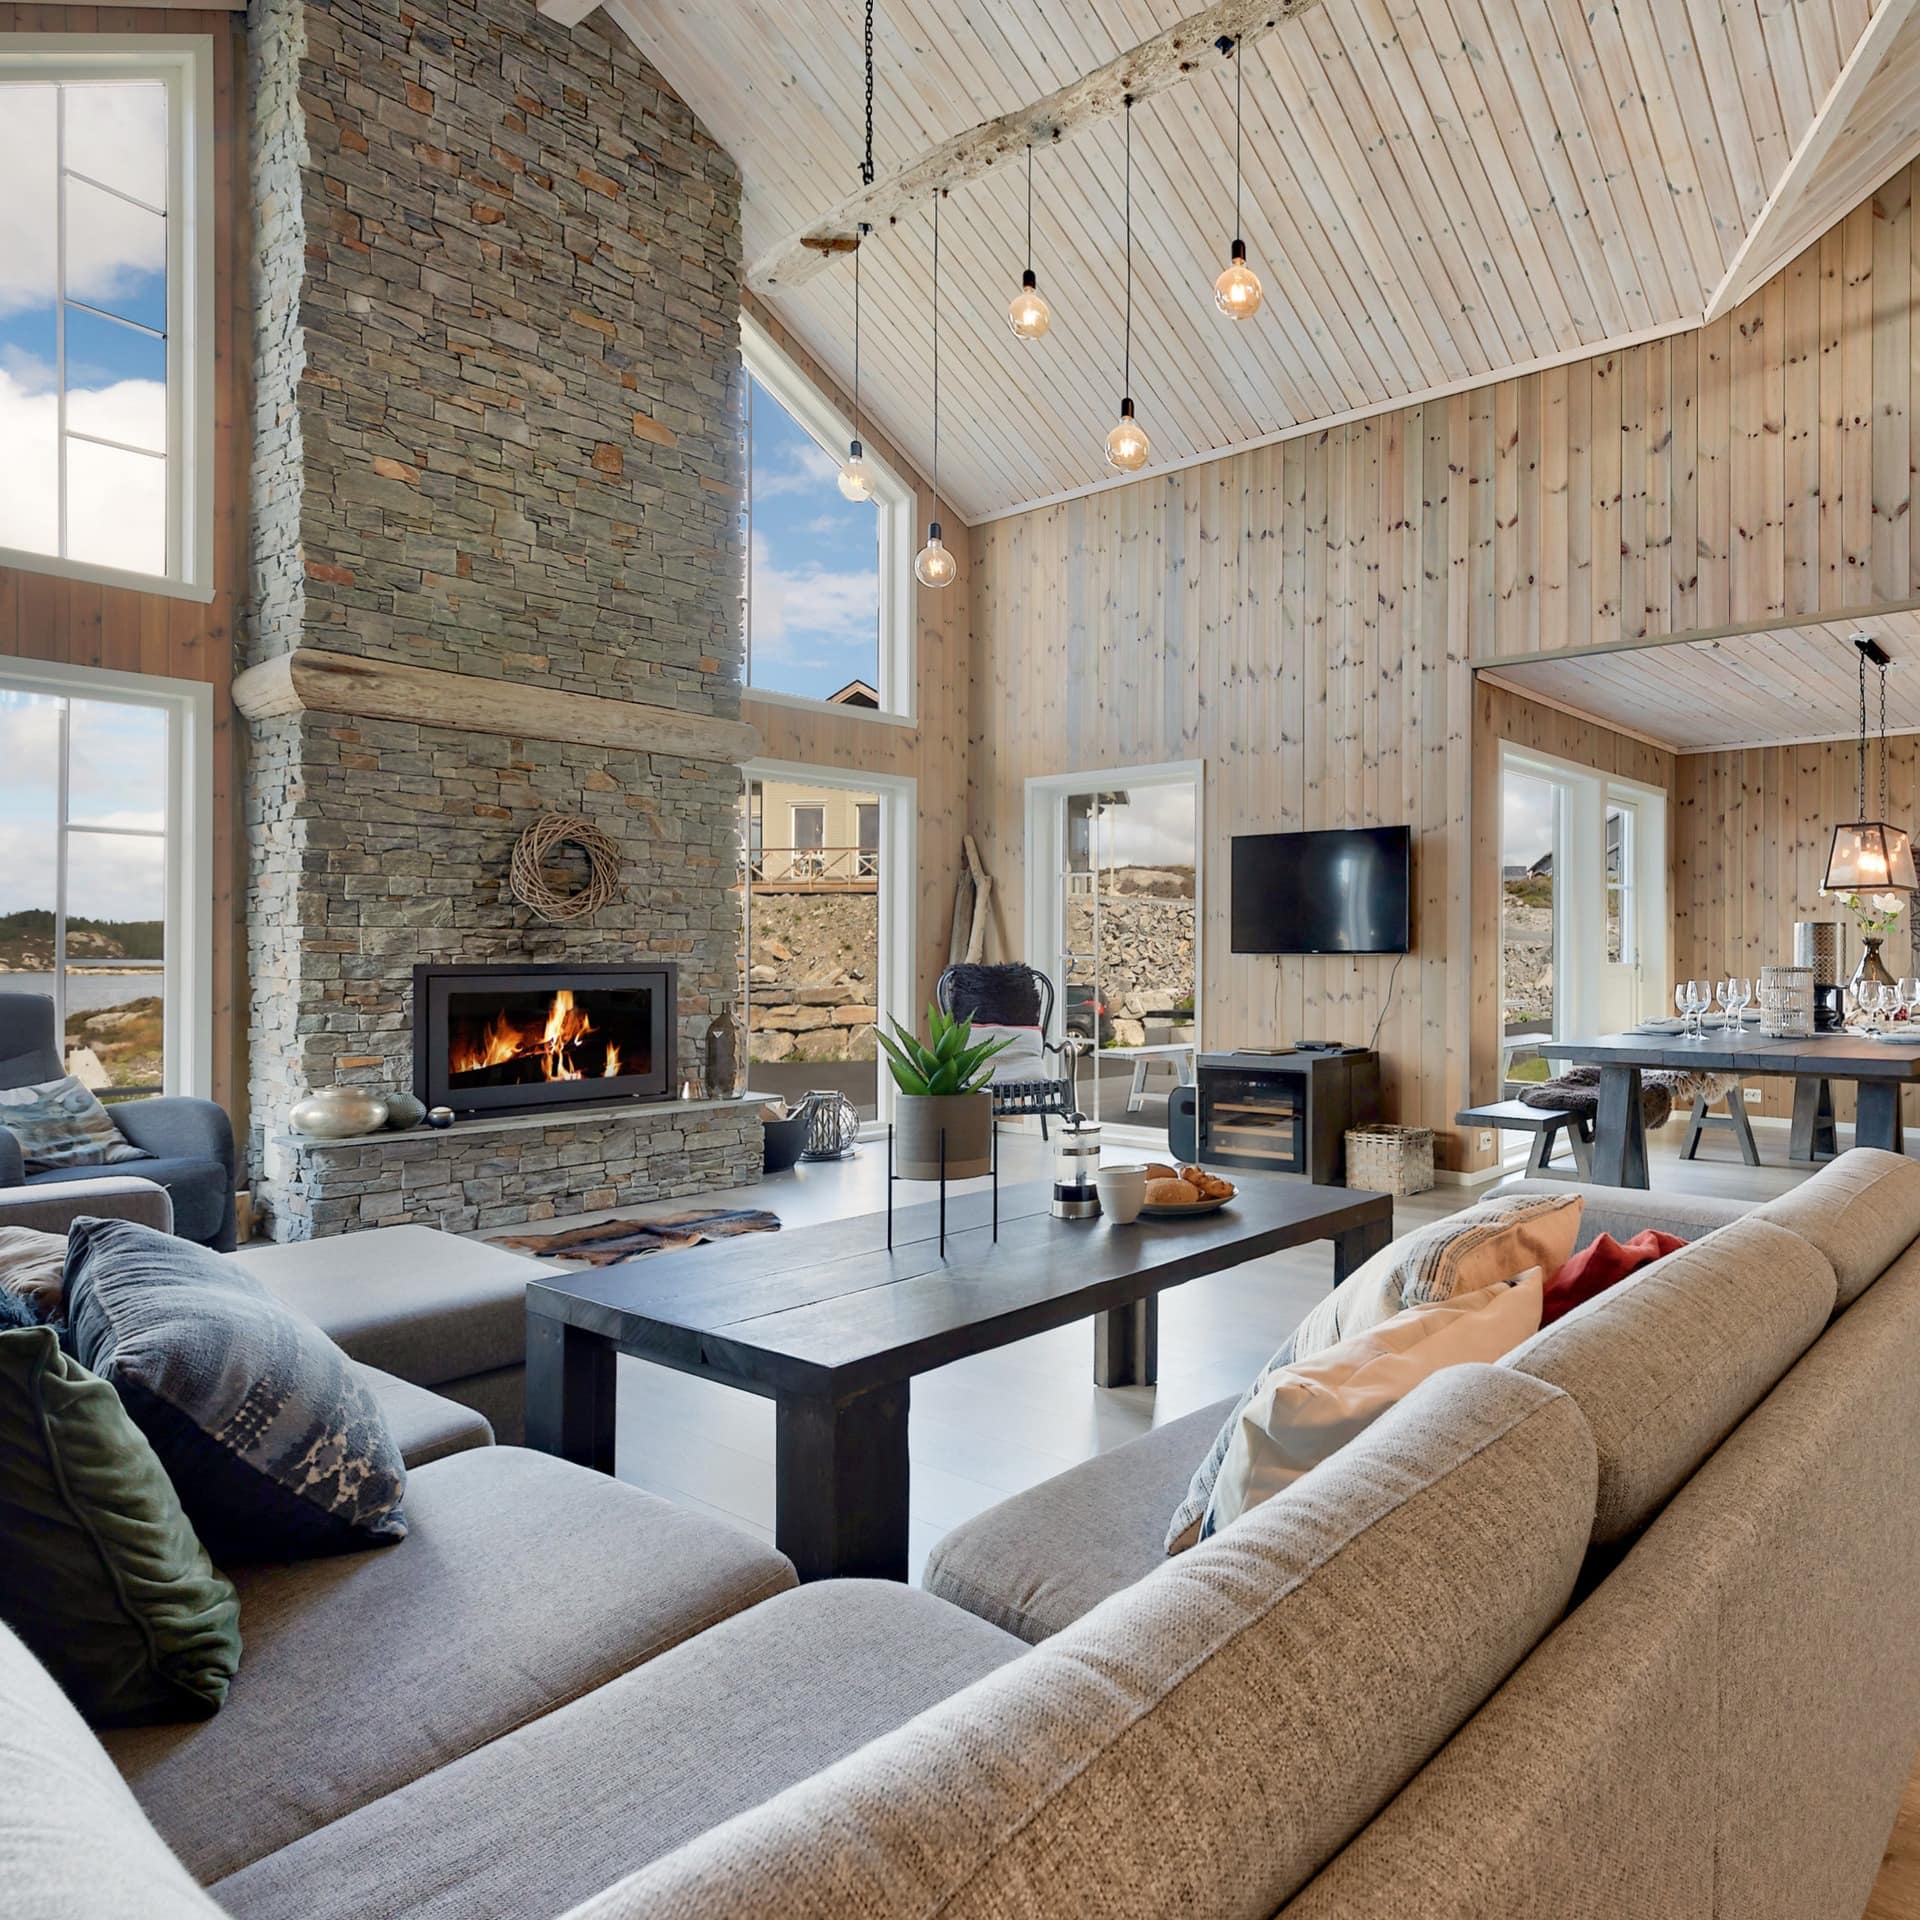 Wohnzimmer eines Luxus-Ferienhauses in Norwegen